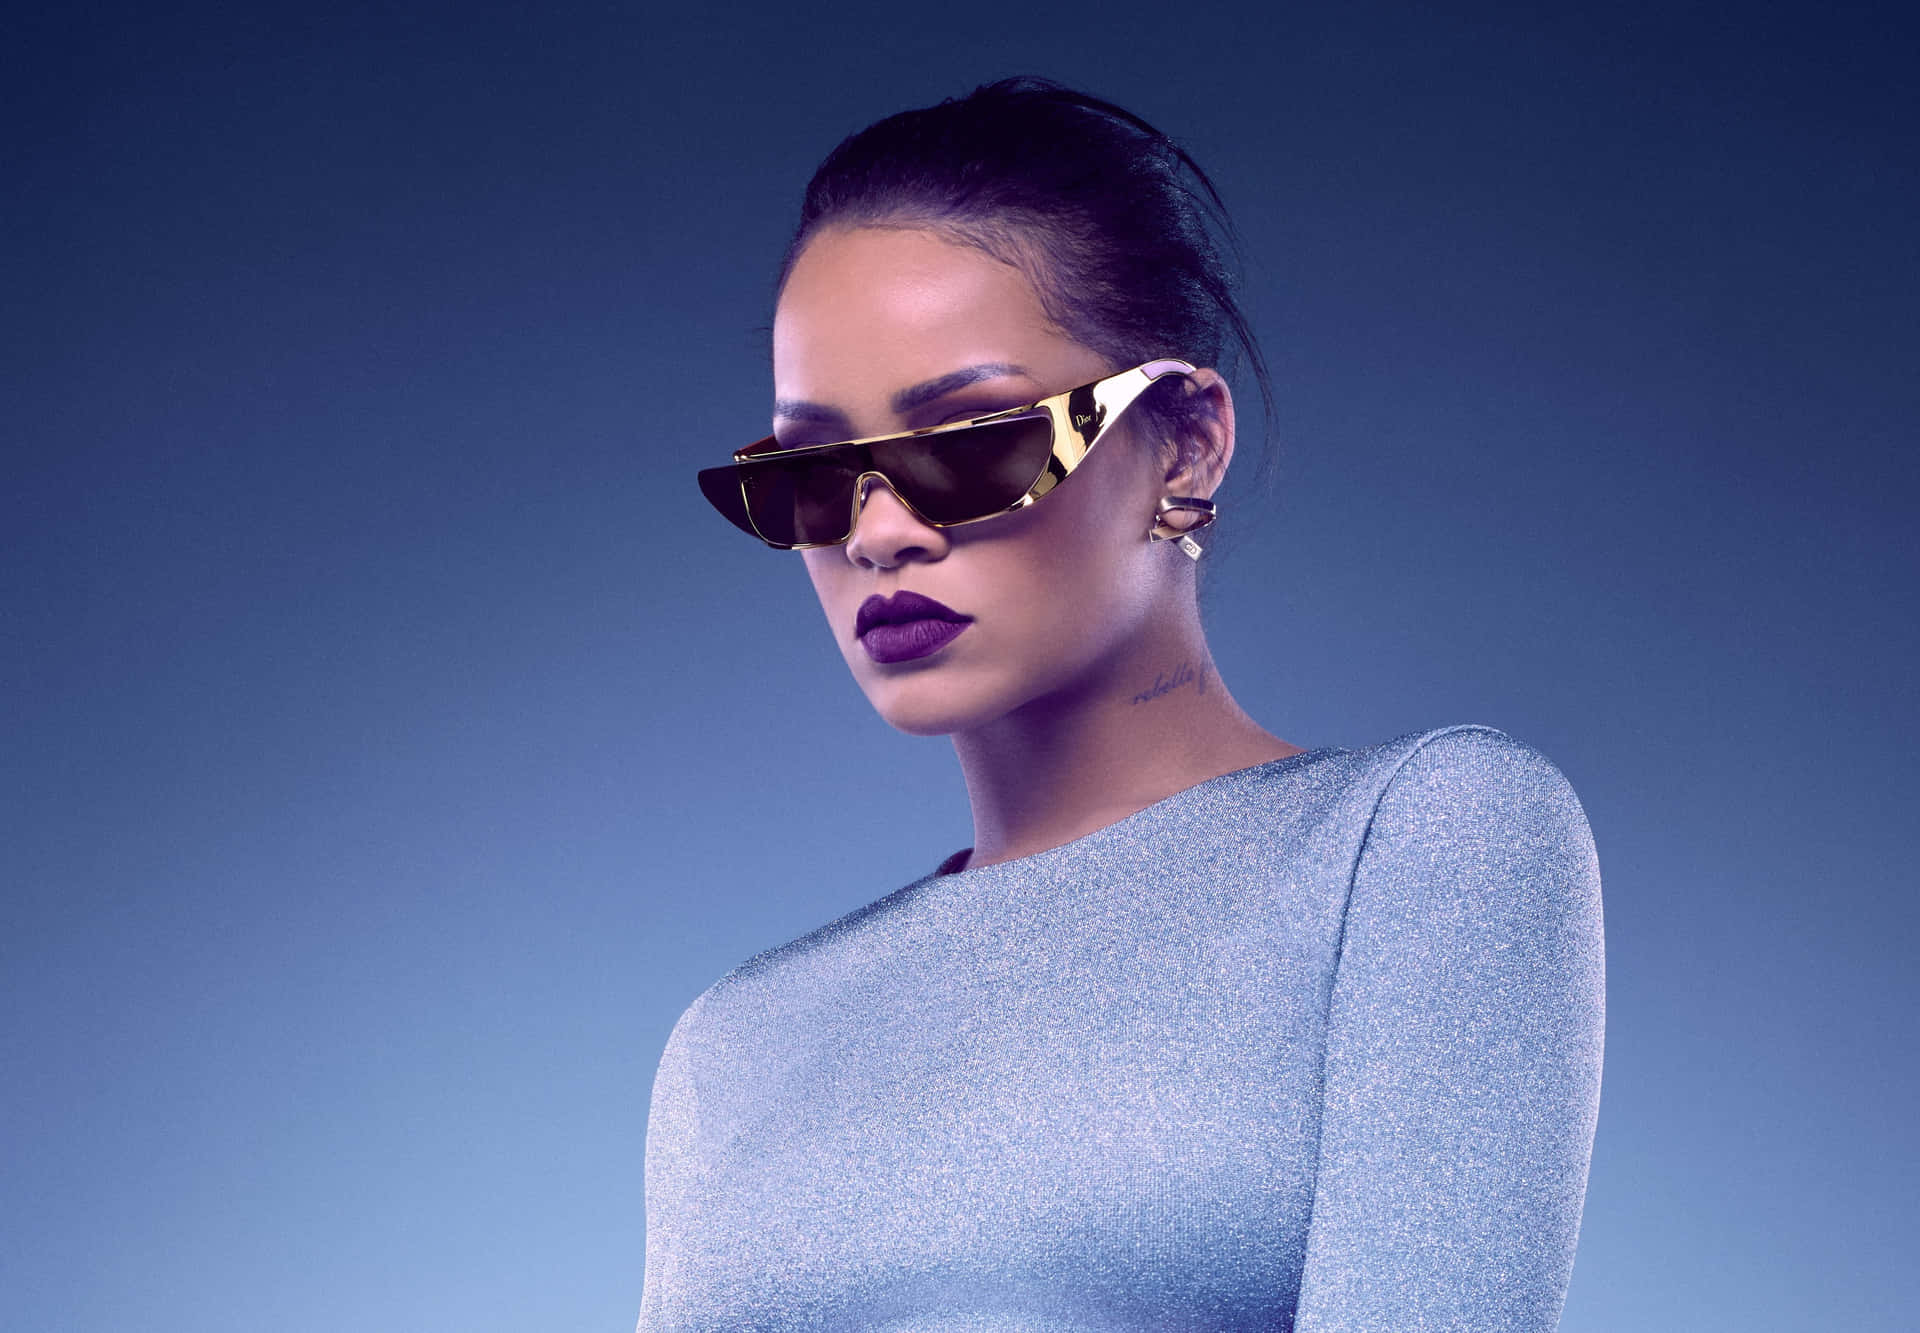 Rihannapräsentiert Ihren Glamour Und Stil.